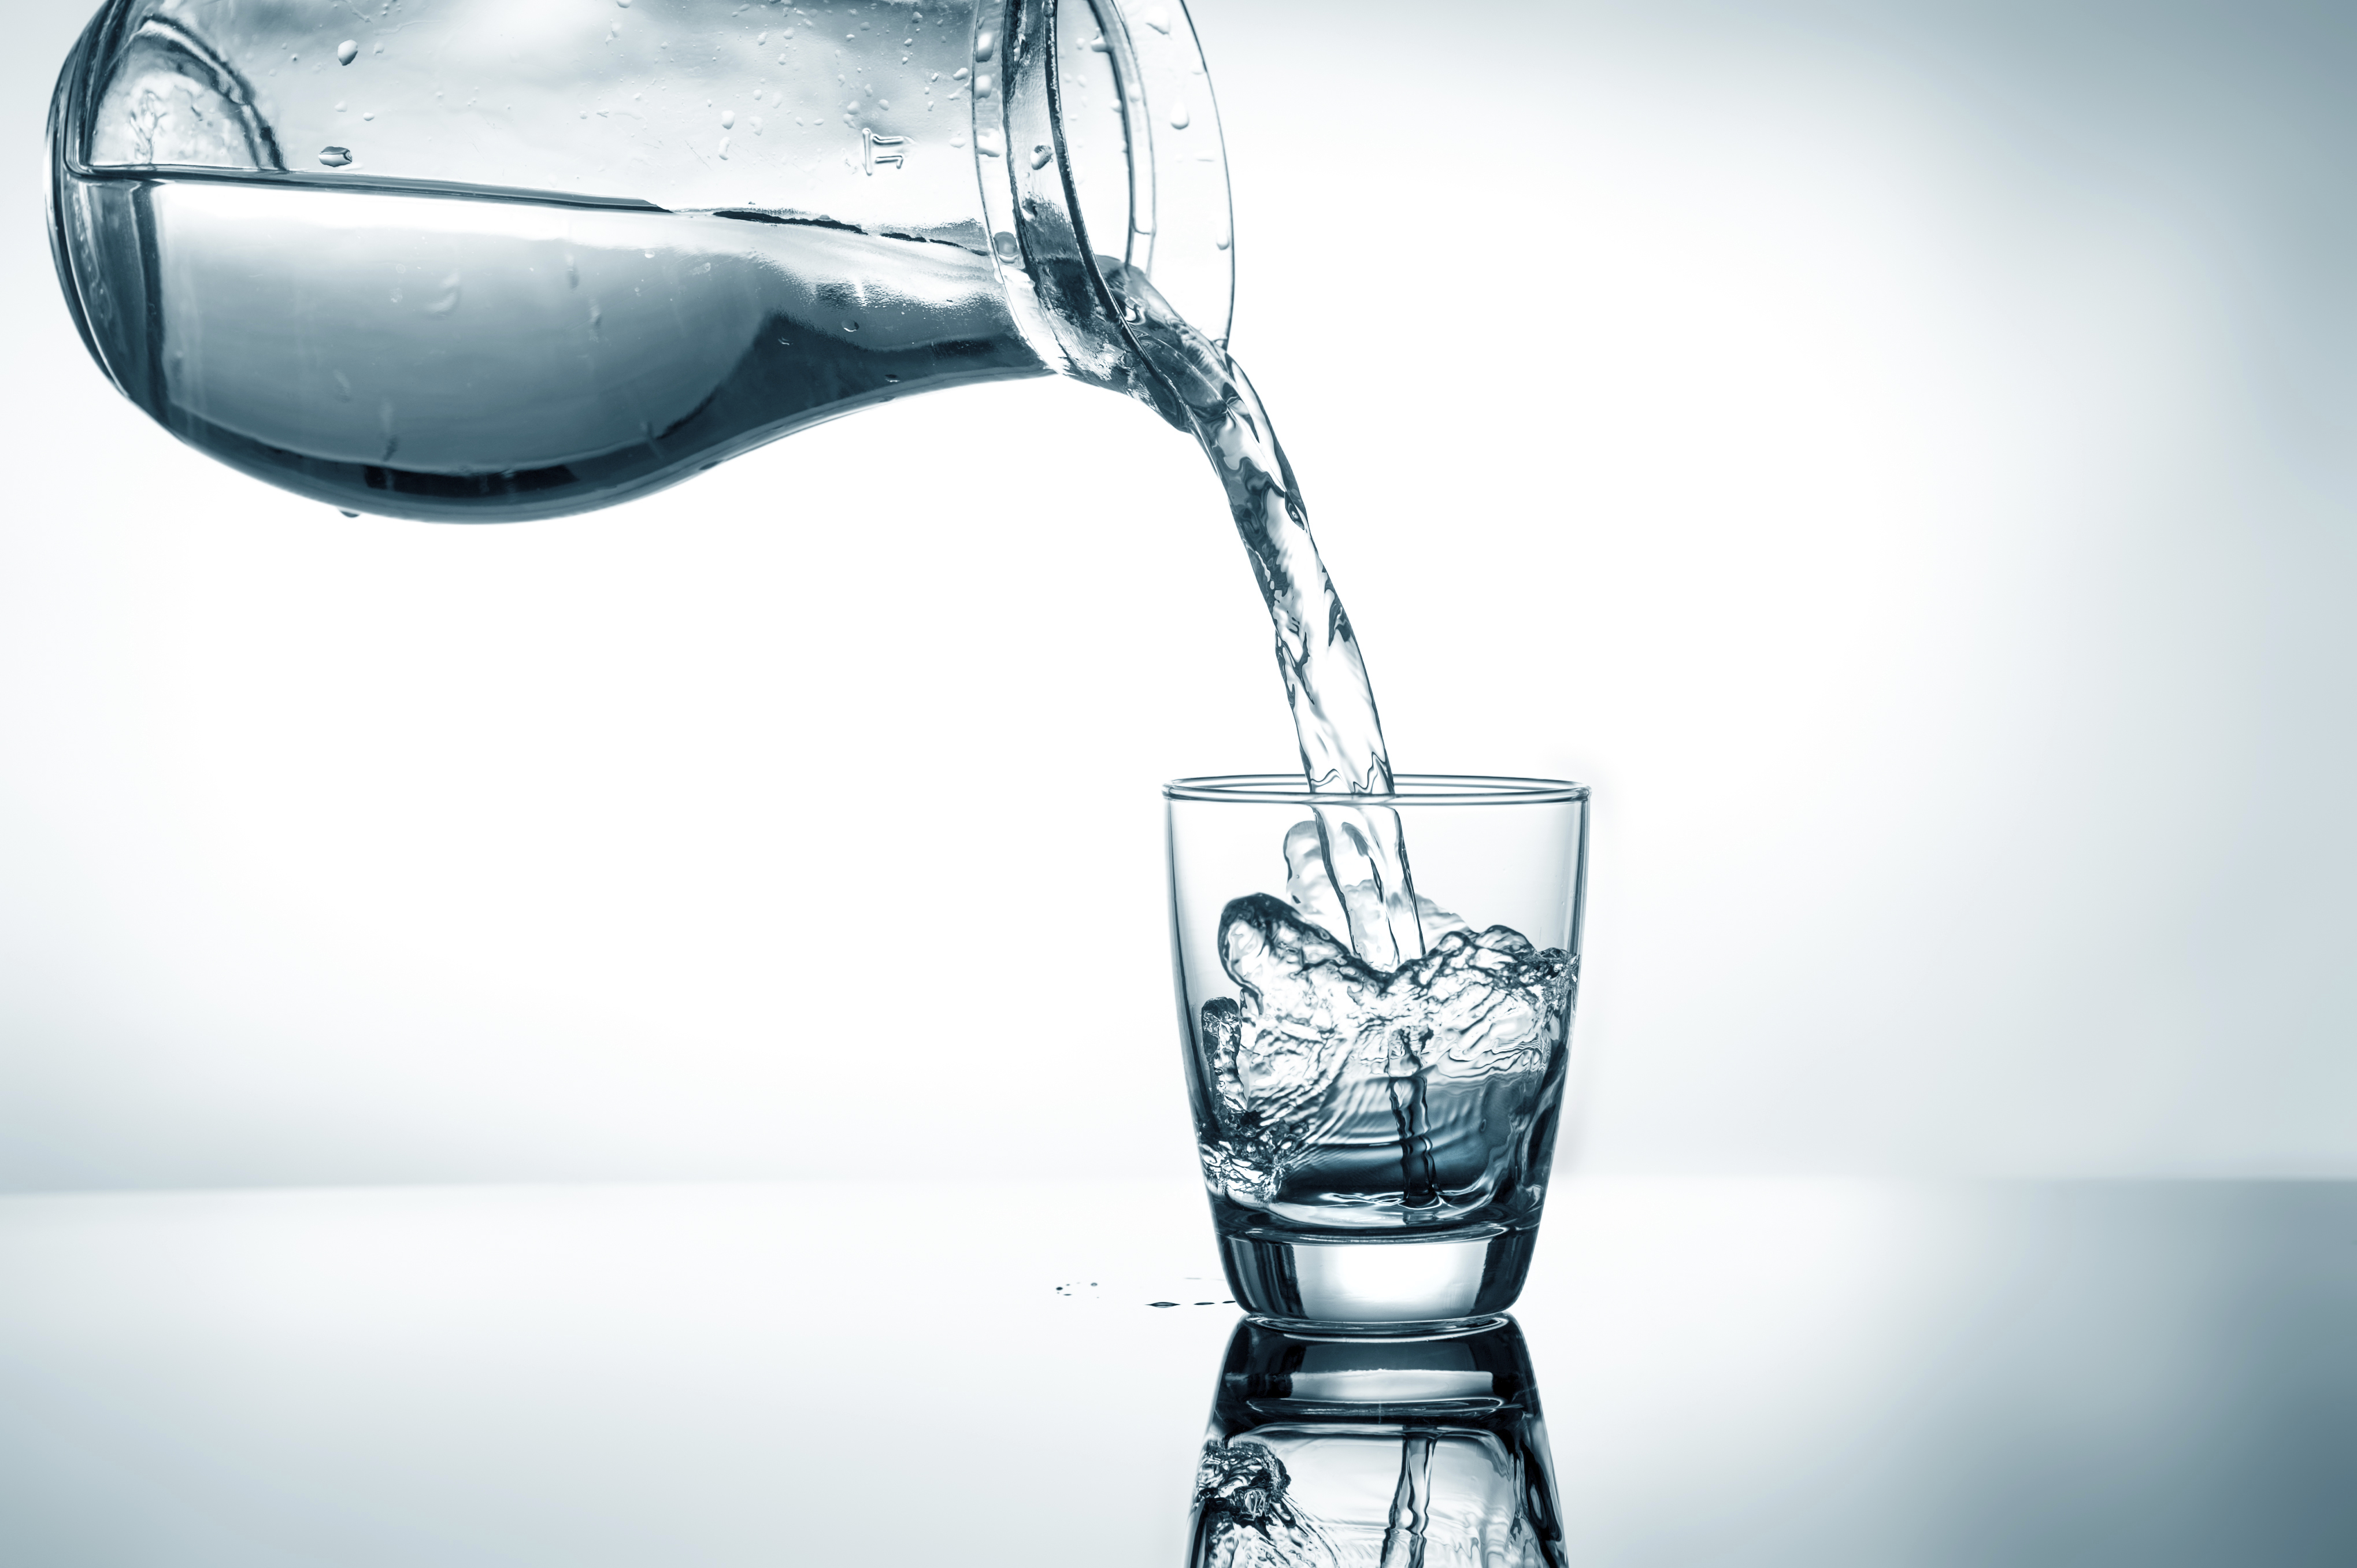 Налить в стакан половину воды. Стакан воды. Вода льется в стакан. Наливает воду. Воду наливают в стакан.